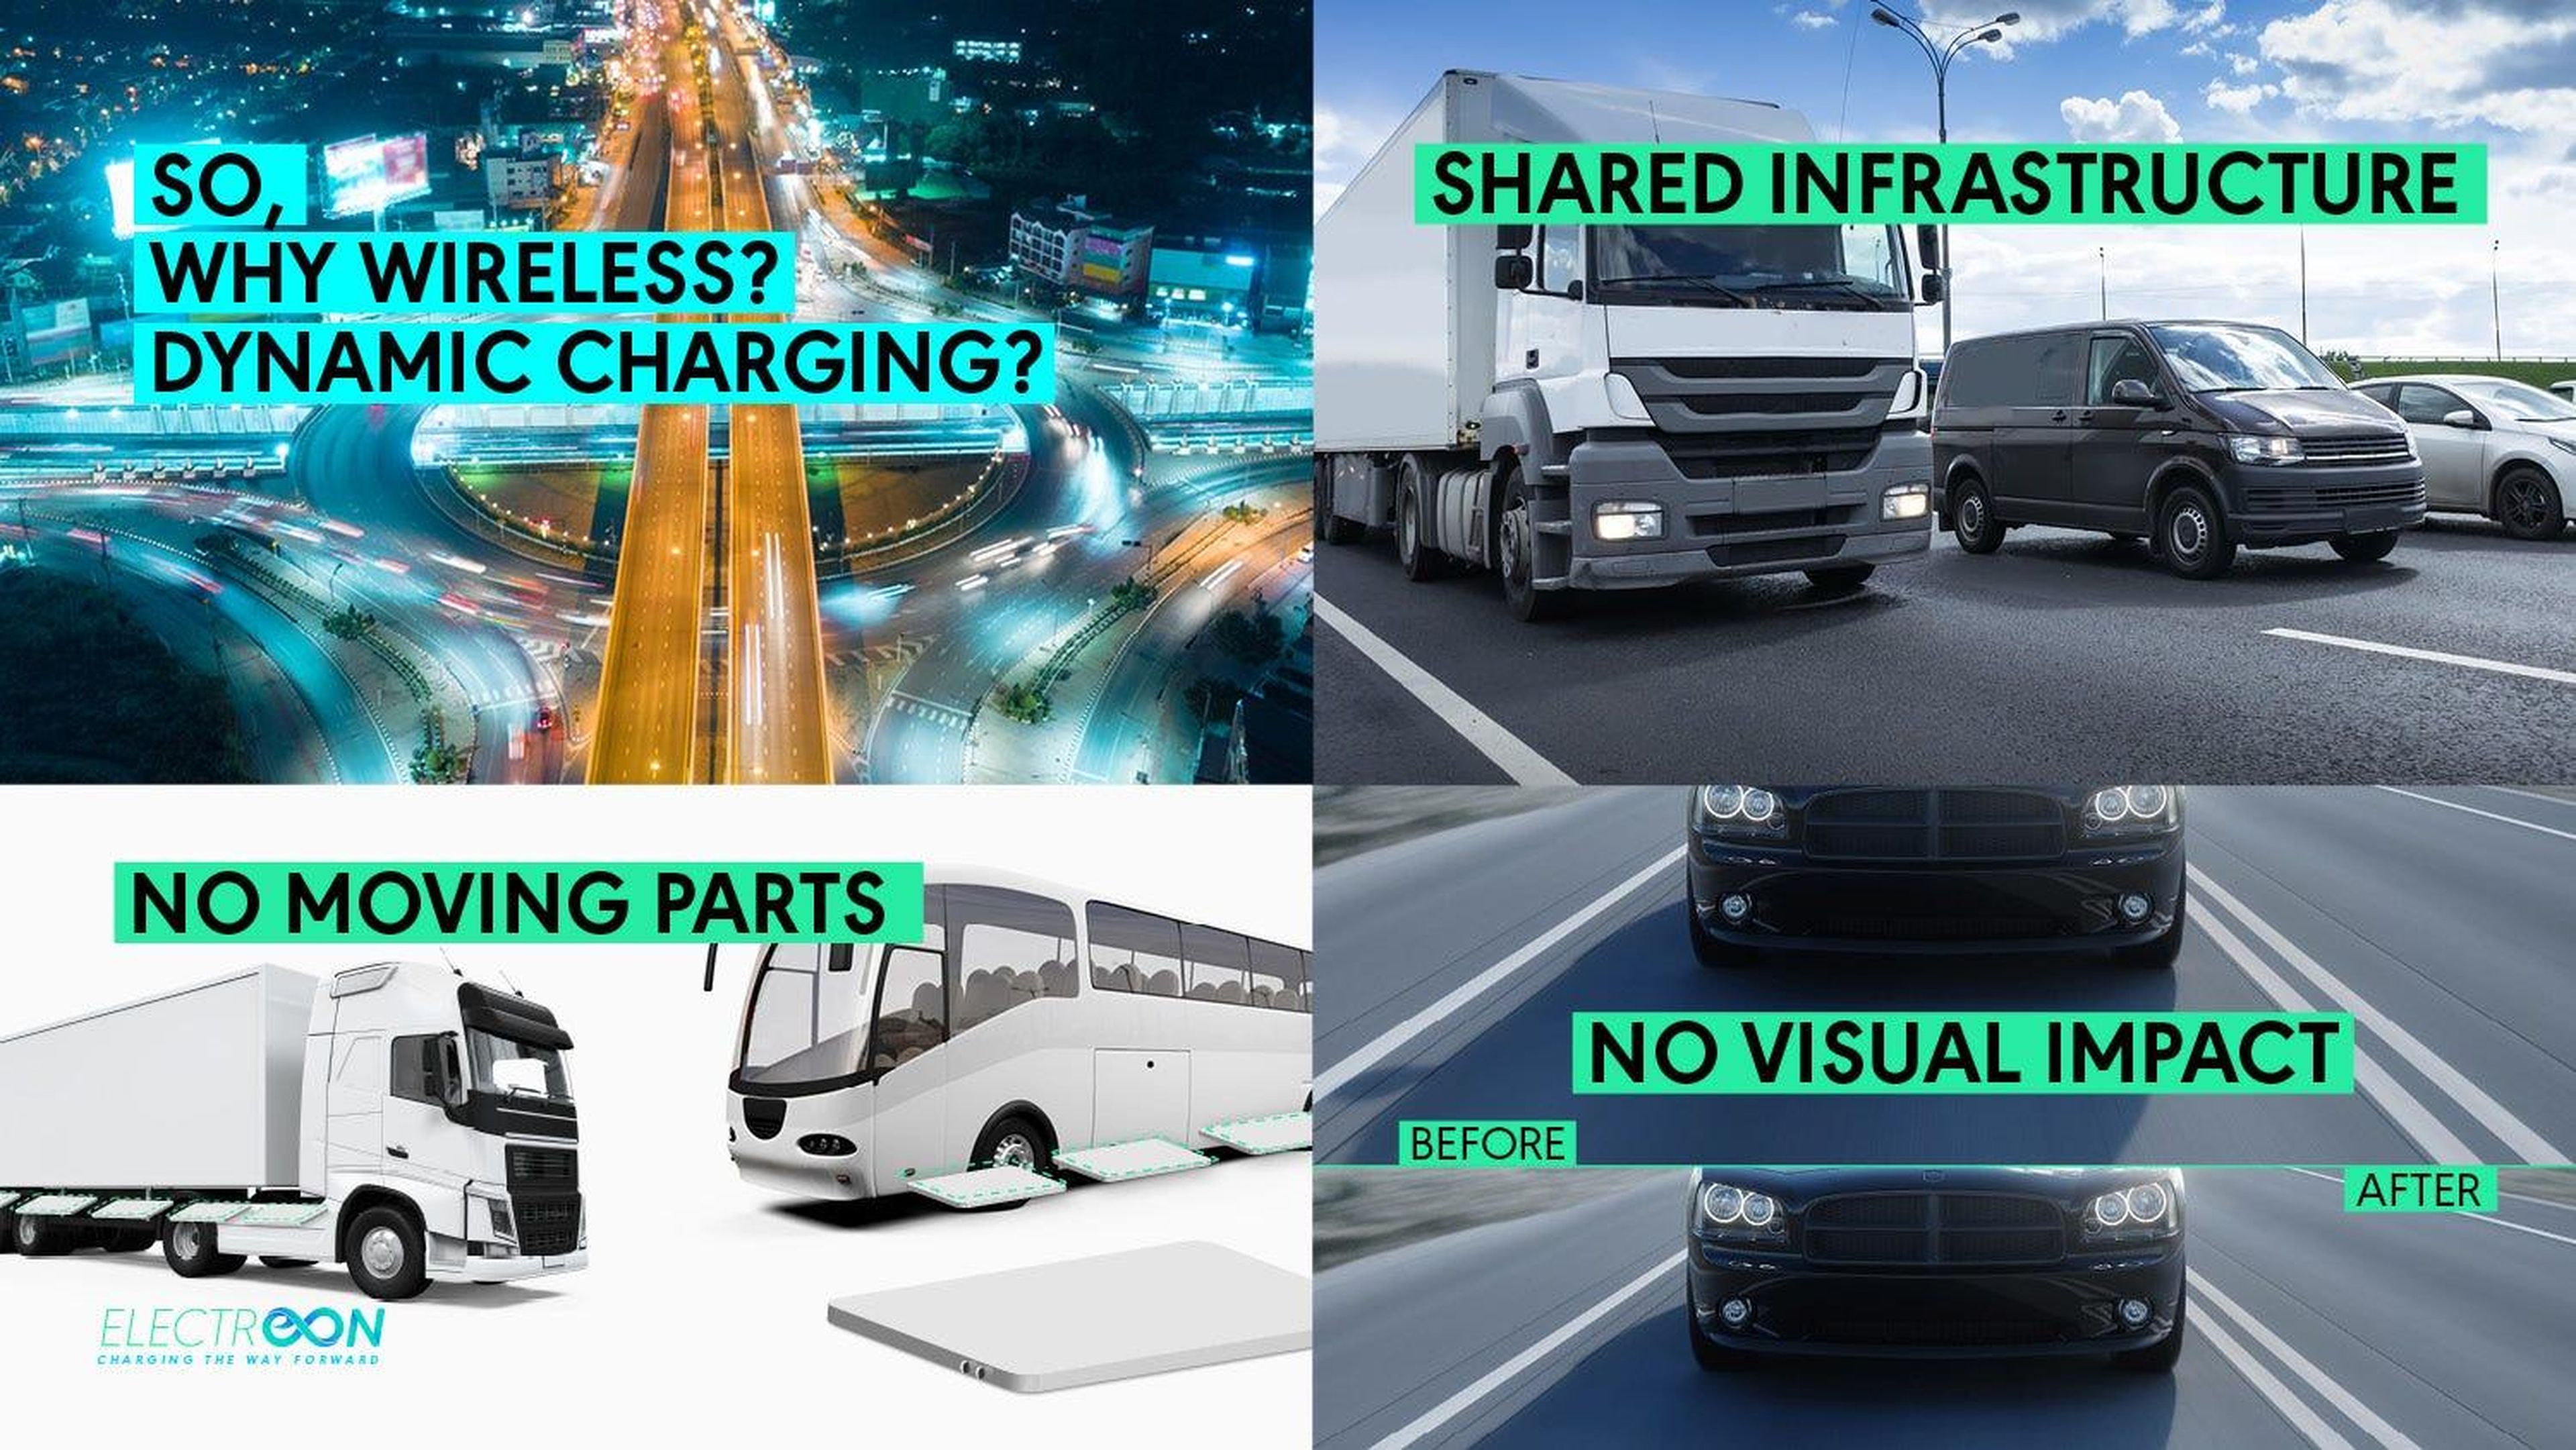 Las carreteras de carga eléctrica pueden ser compartidas por muchos vehículos sin la infraestructura y el espacio que demandan las estaciones de carga.